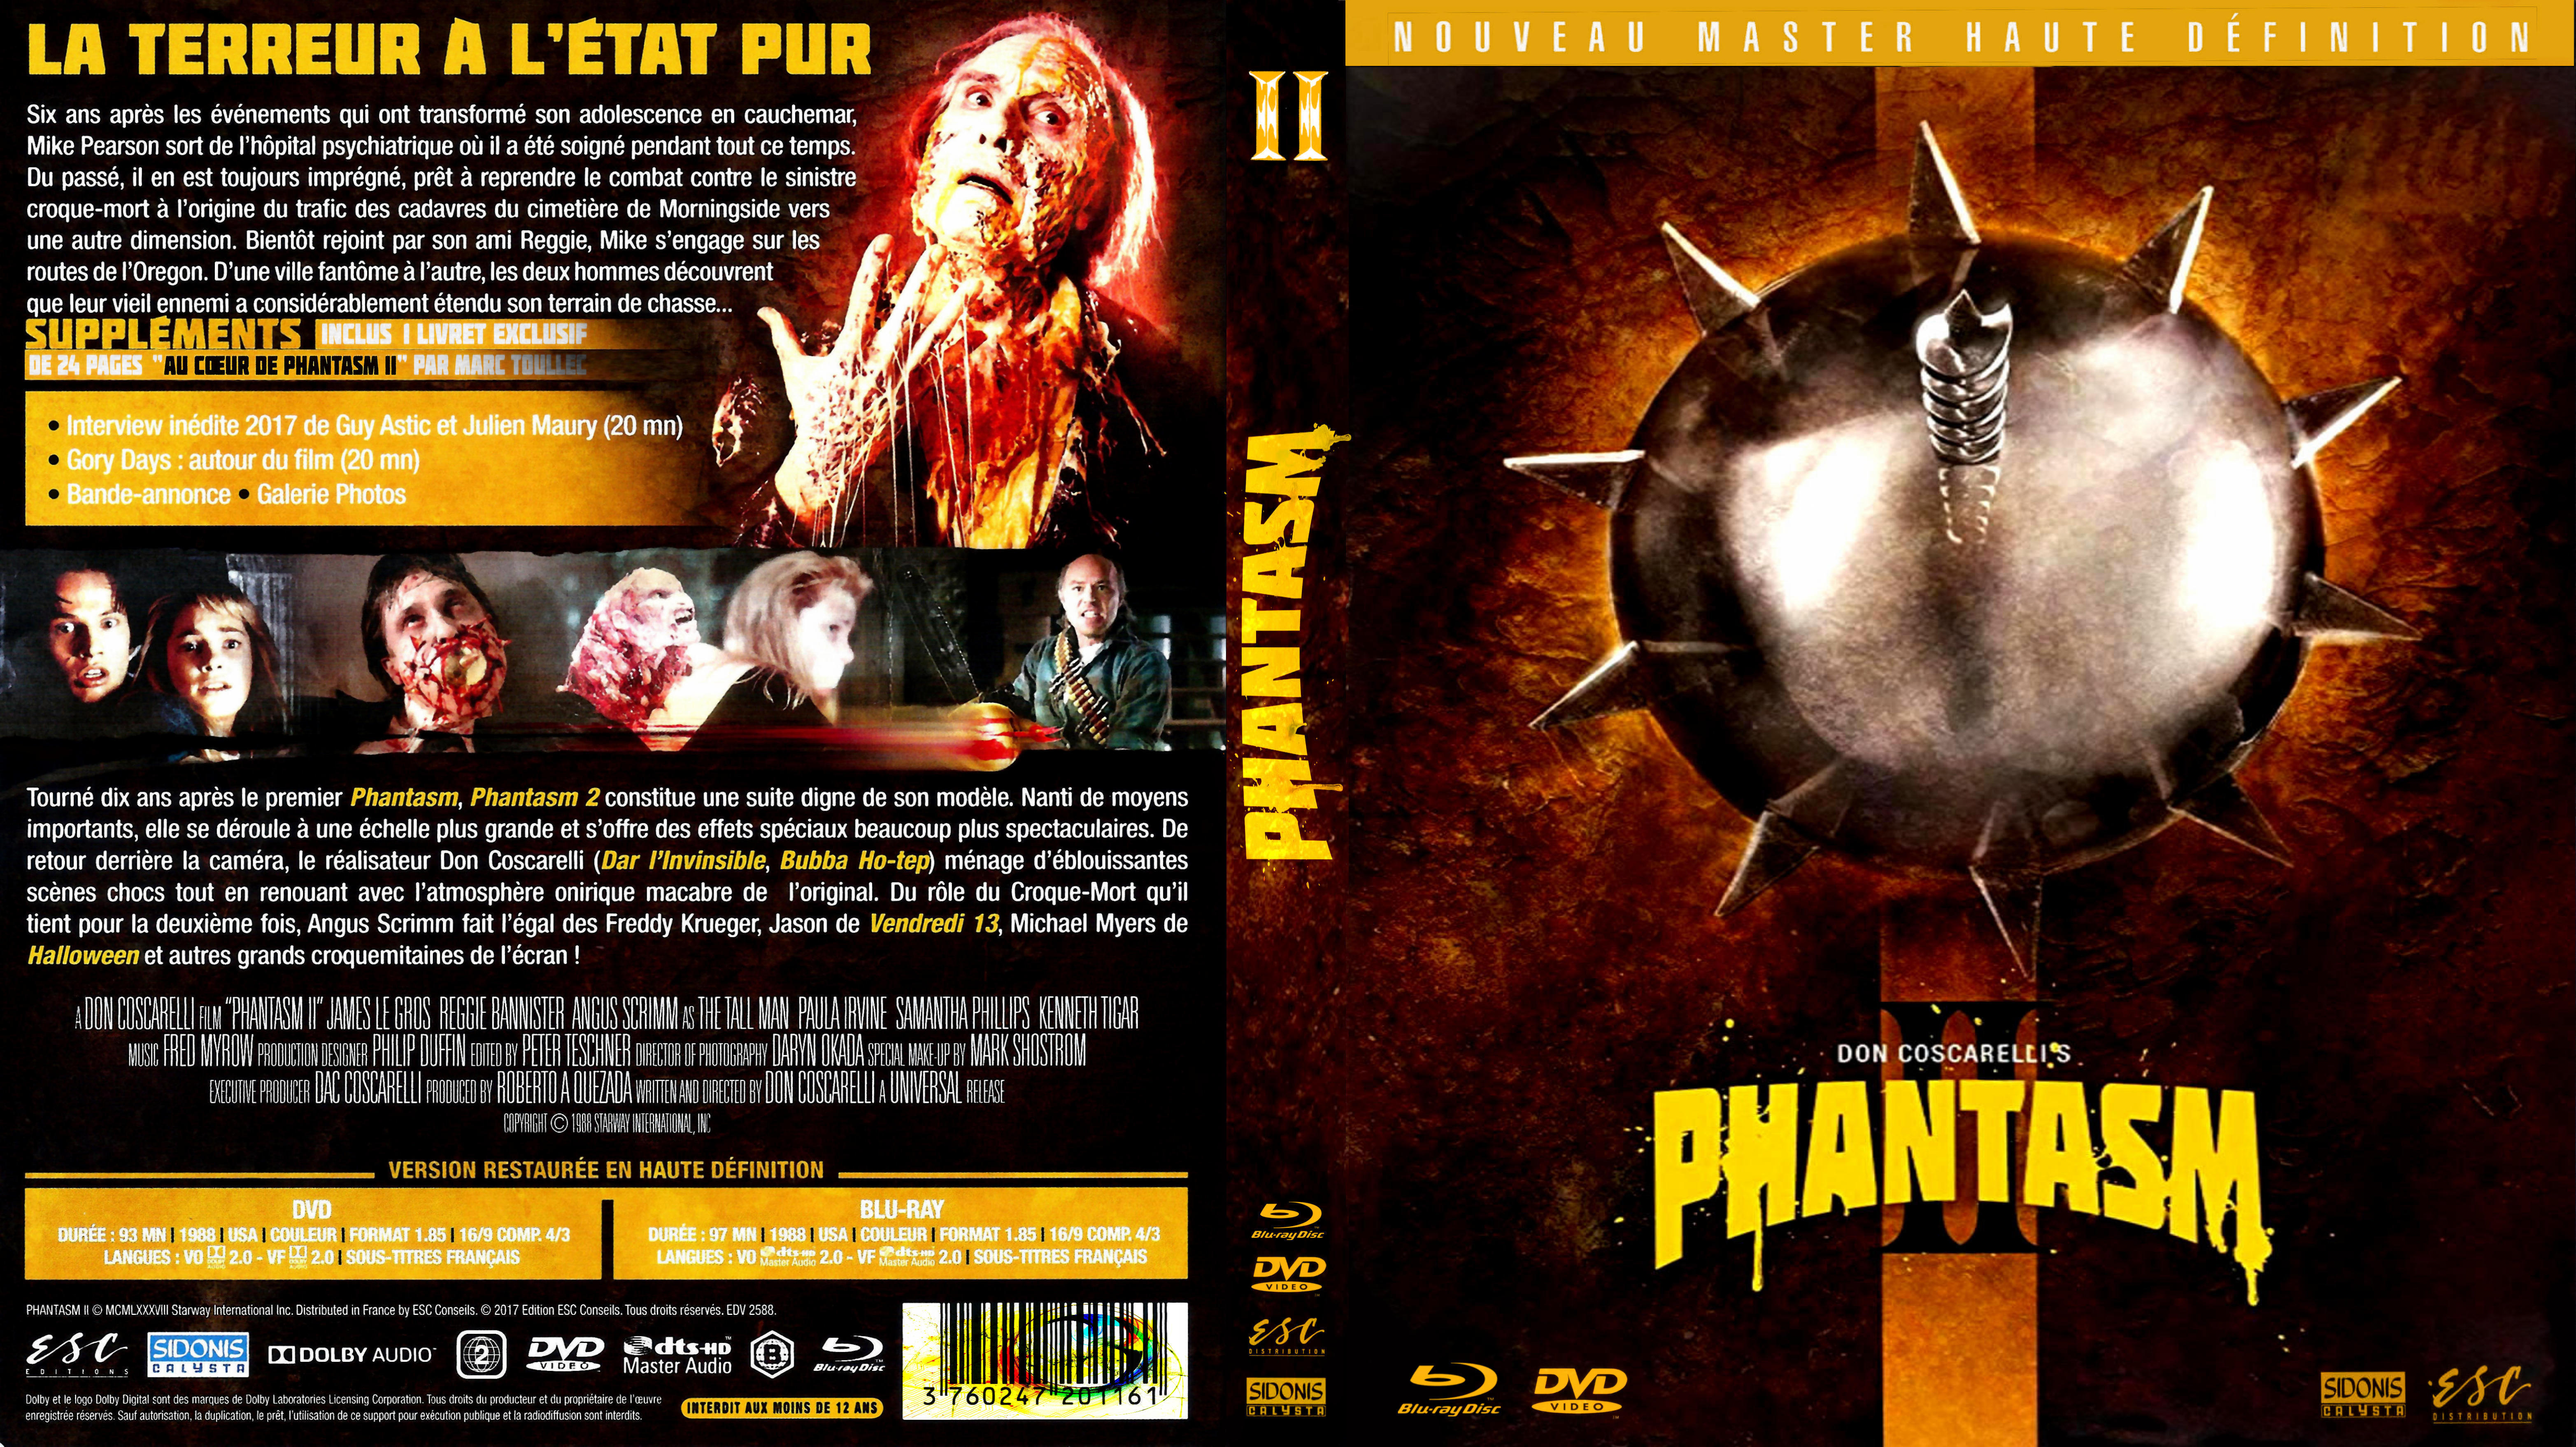 Jaquette DVD Phantasm 2 custom (BLU-RAY)